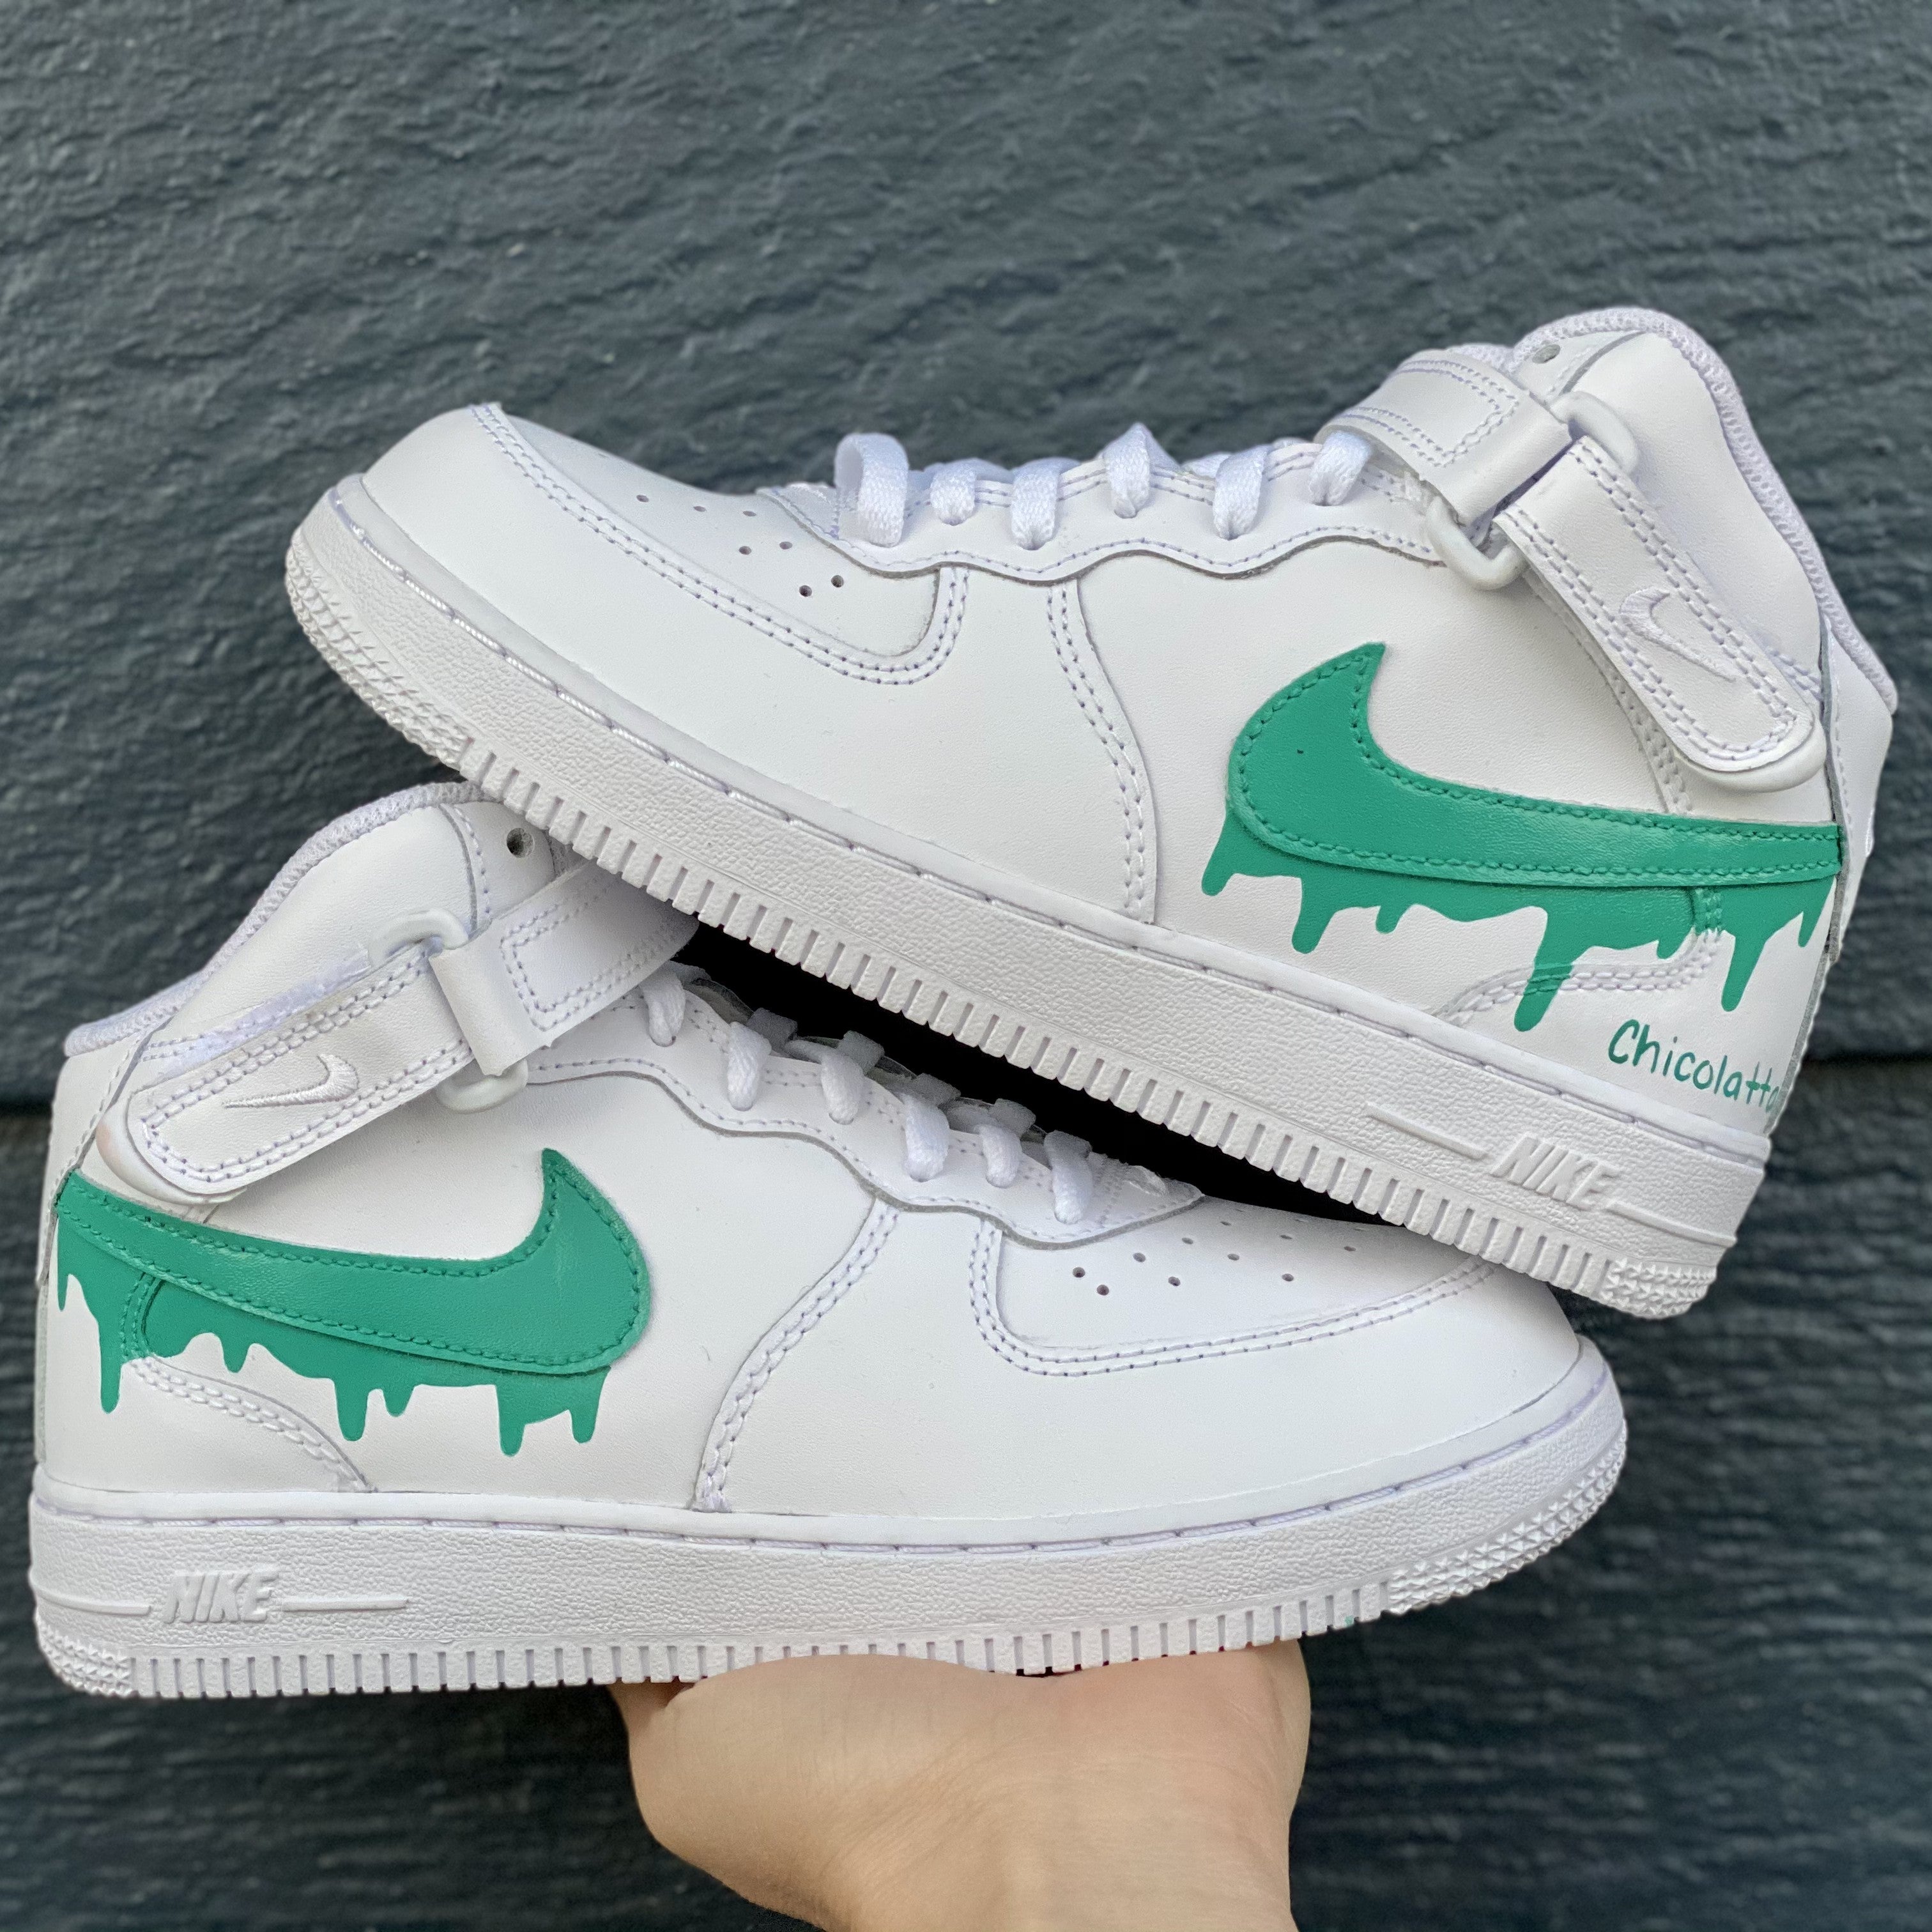 Custom Nike Air Force 1 Painted Sneakers Teal Green Af1 